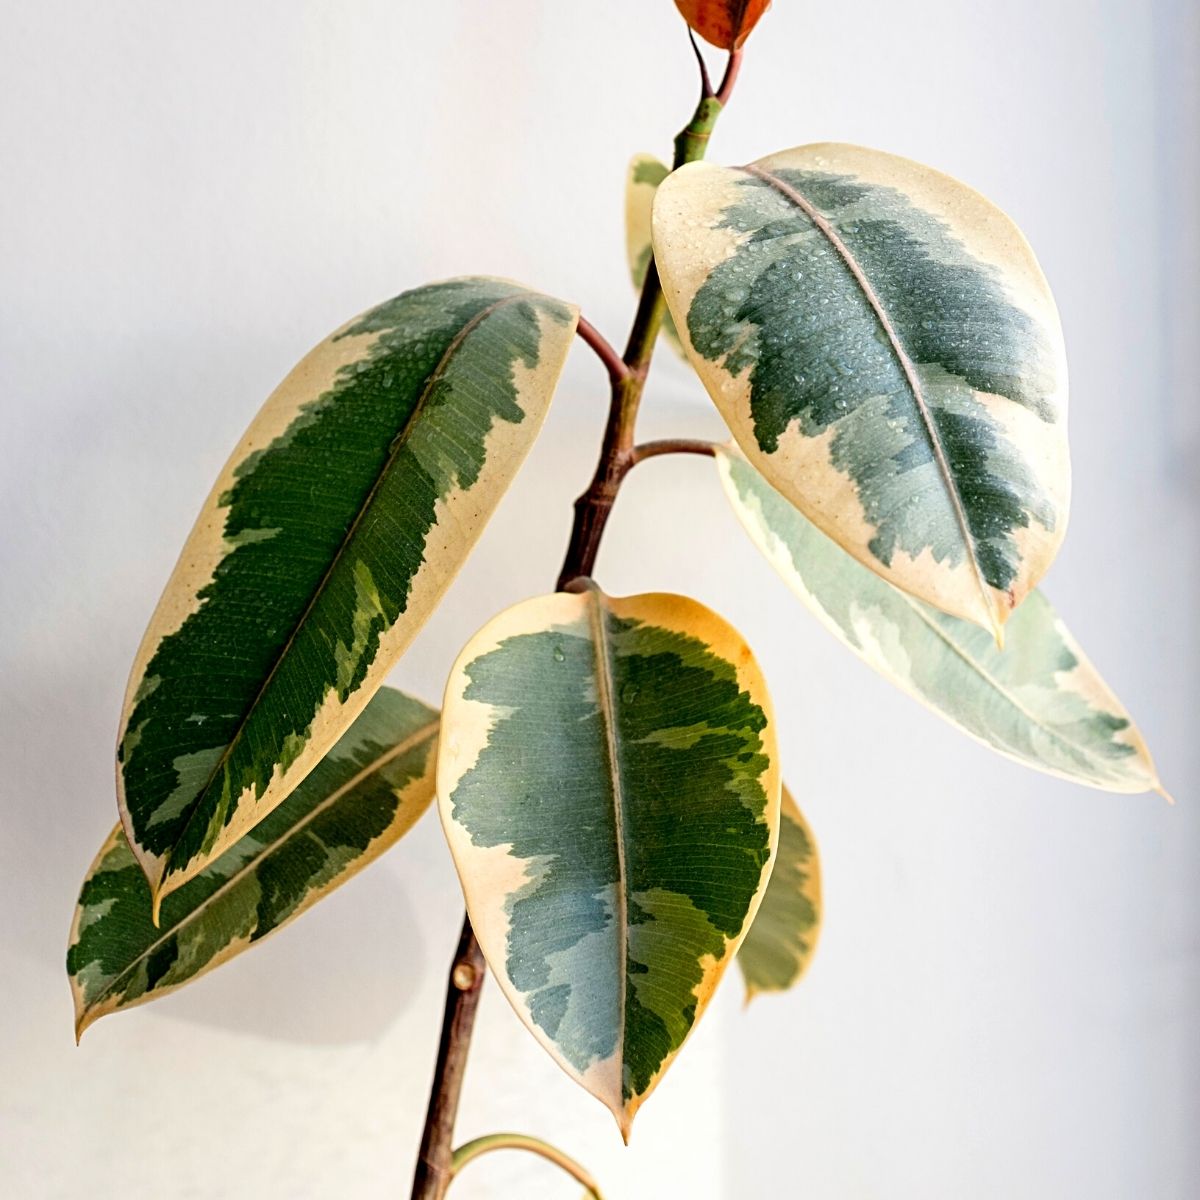 Rubber Plant (Ficus Elastica) Strongest Houseplants- Article on thursd